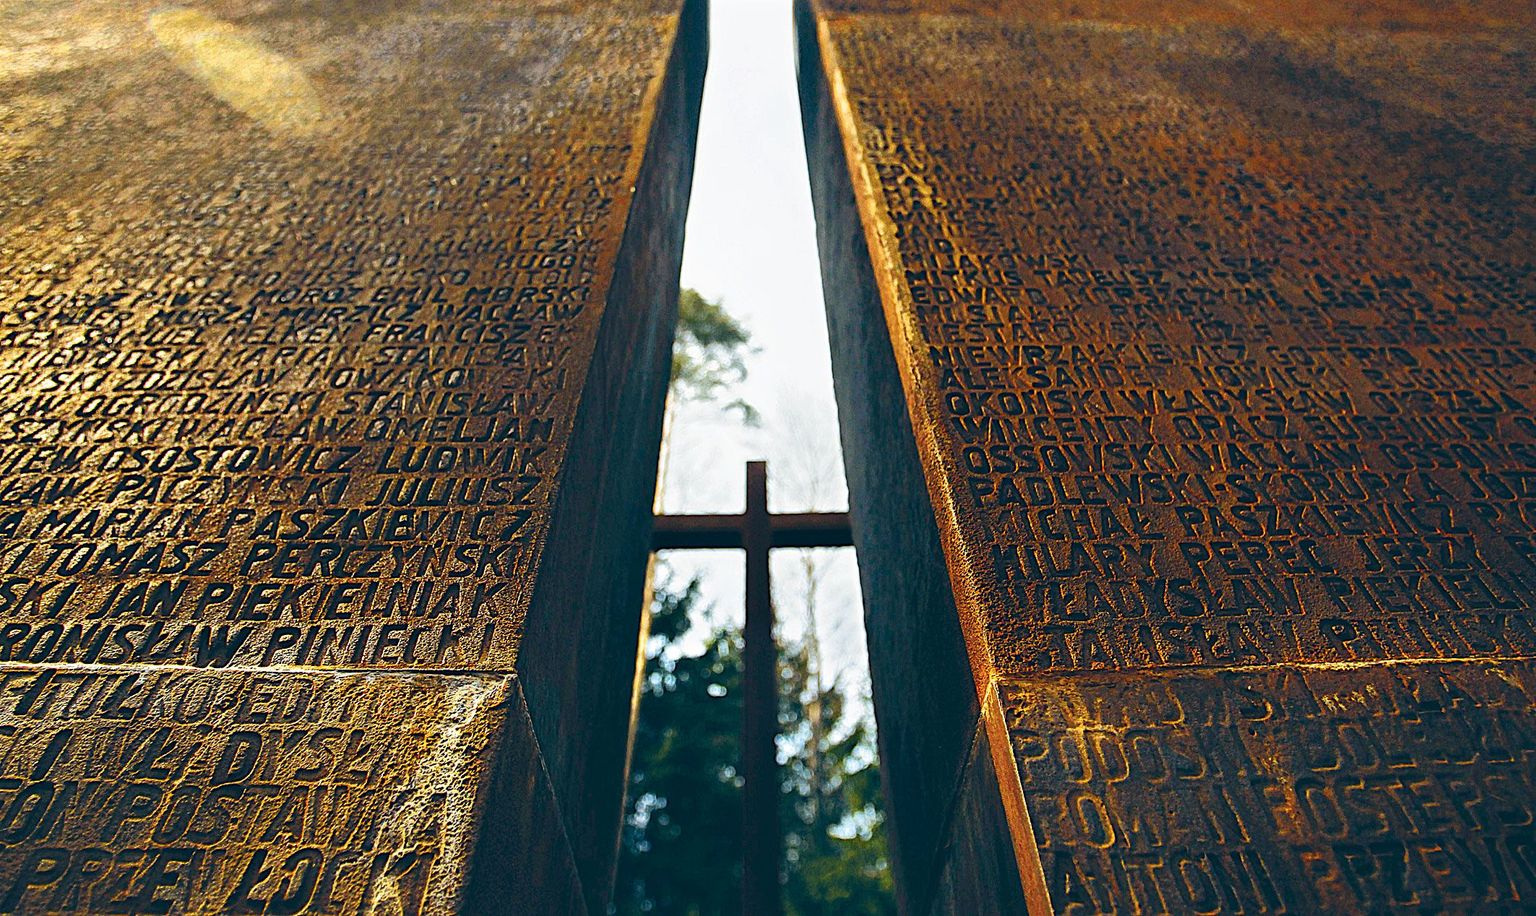 Katõni veresauna mälestusmärk, millel on kirjas enam kui 21 000 1940. aasta aprillis mõrvatud Poola kodaniku nimed.